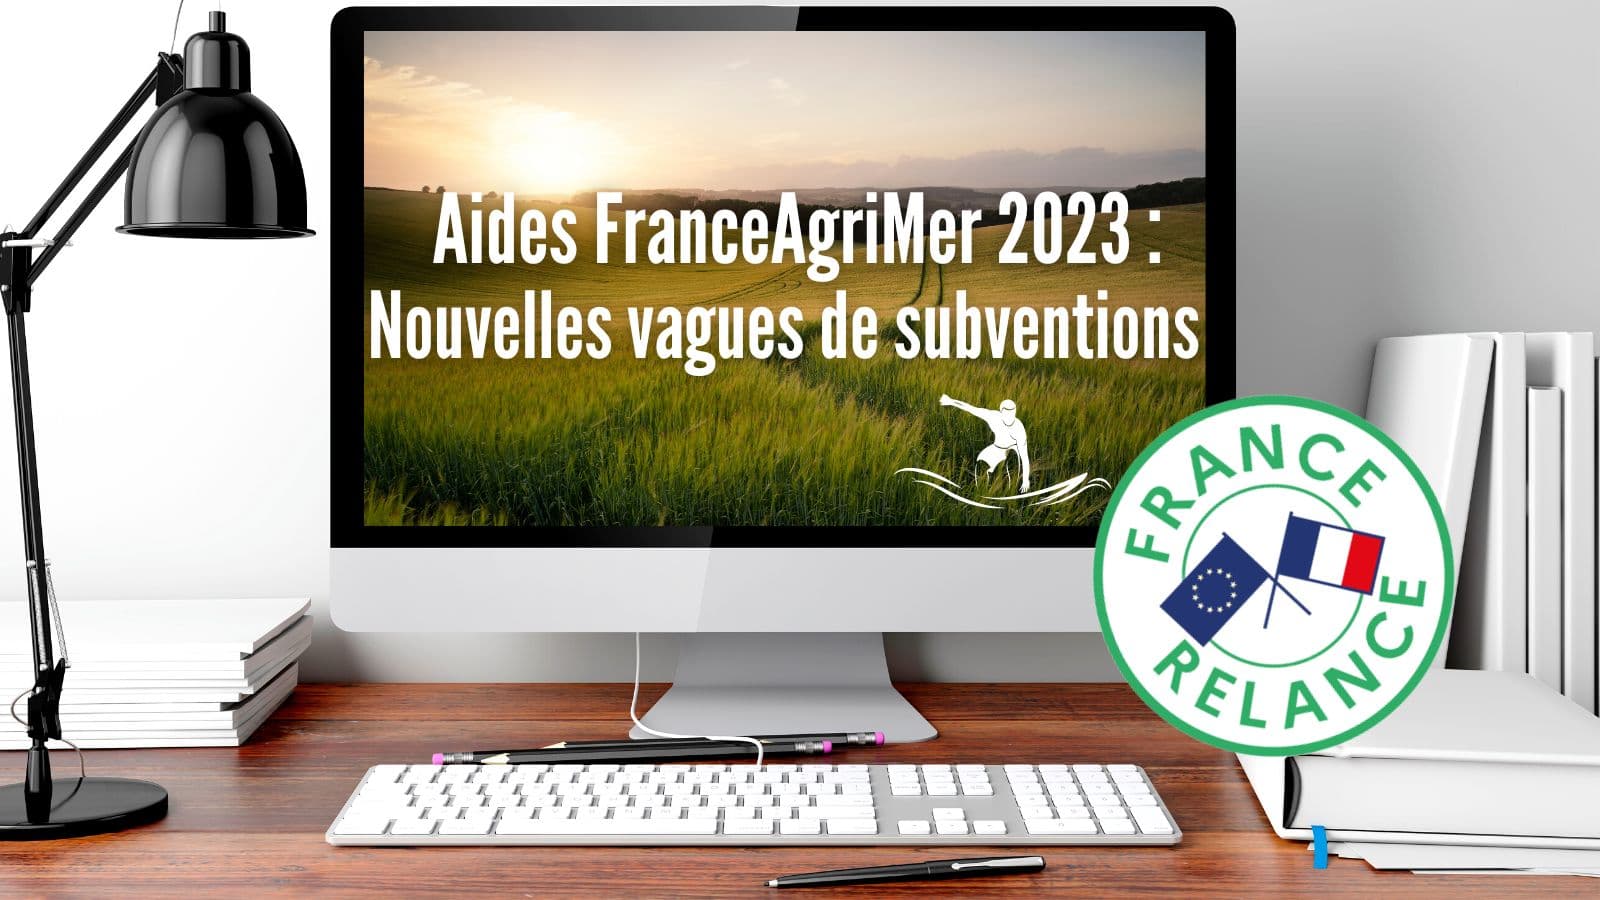 Aides FranceAgriMer 2023 - Nouvelles subventions agricoles